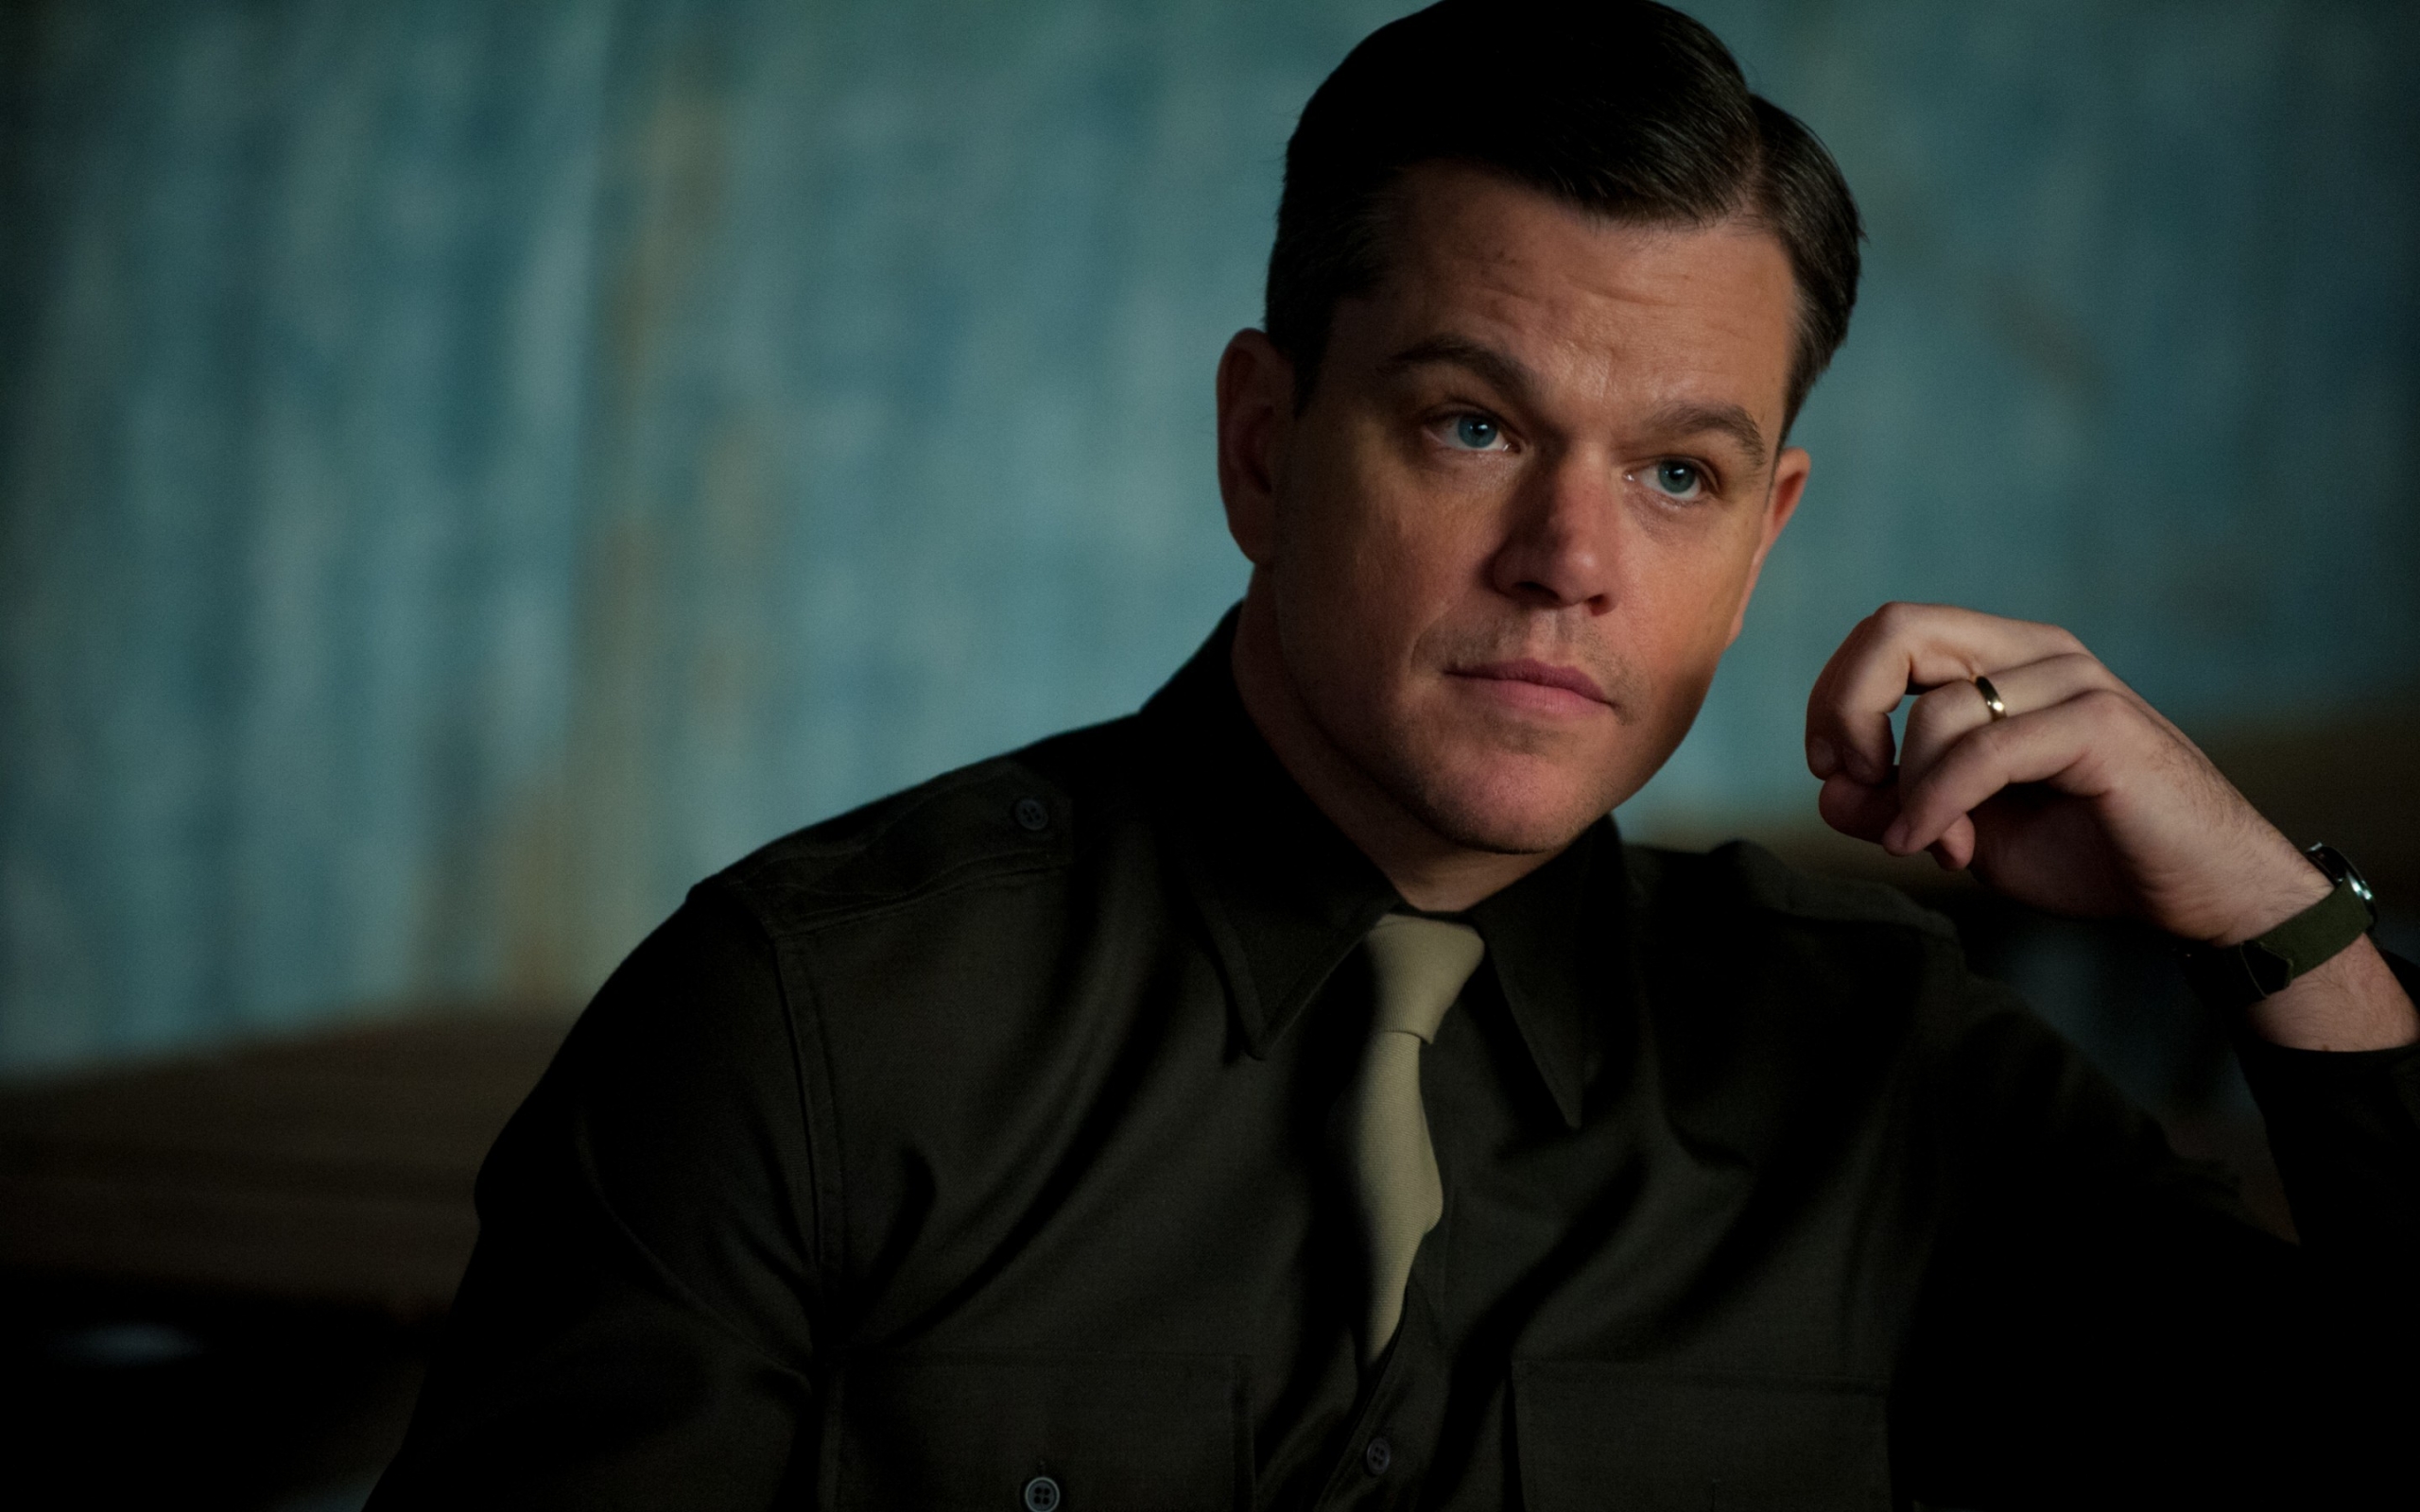 Matt Damon Portrait for 2560 x 1600 widescreen resolution